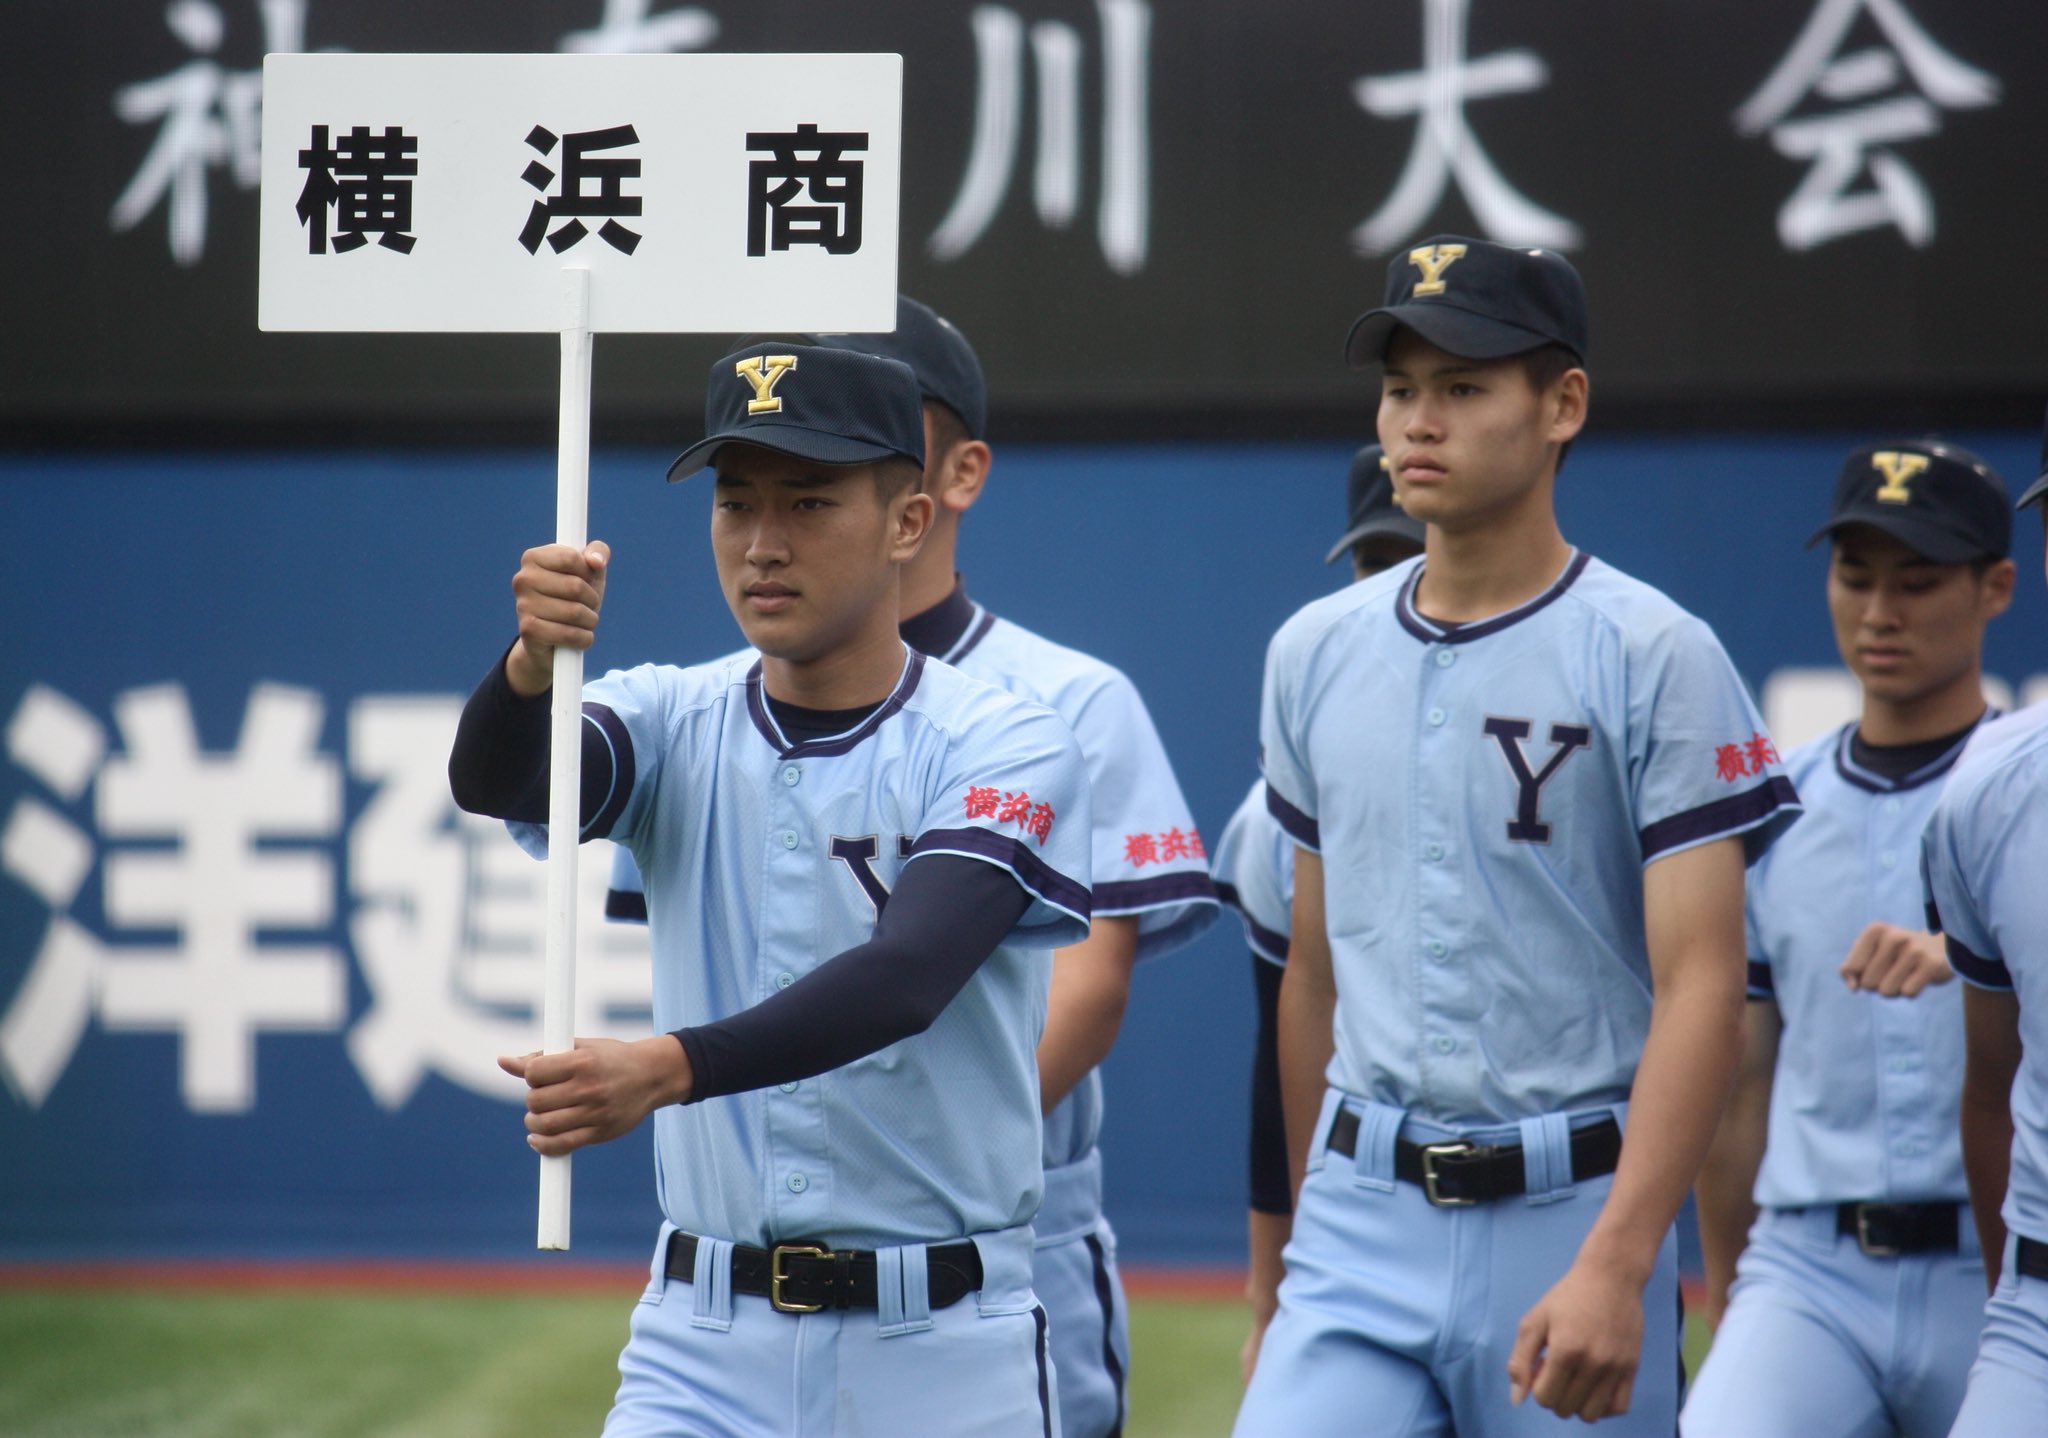 横浜高校 野球部 ユニフォーム - 野球